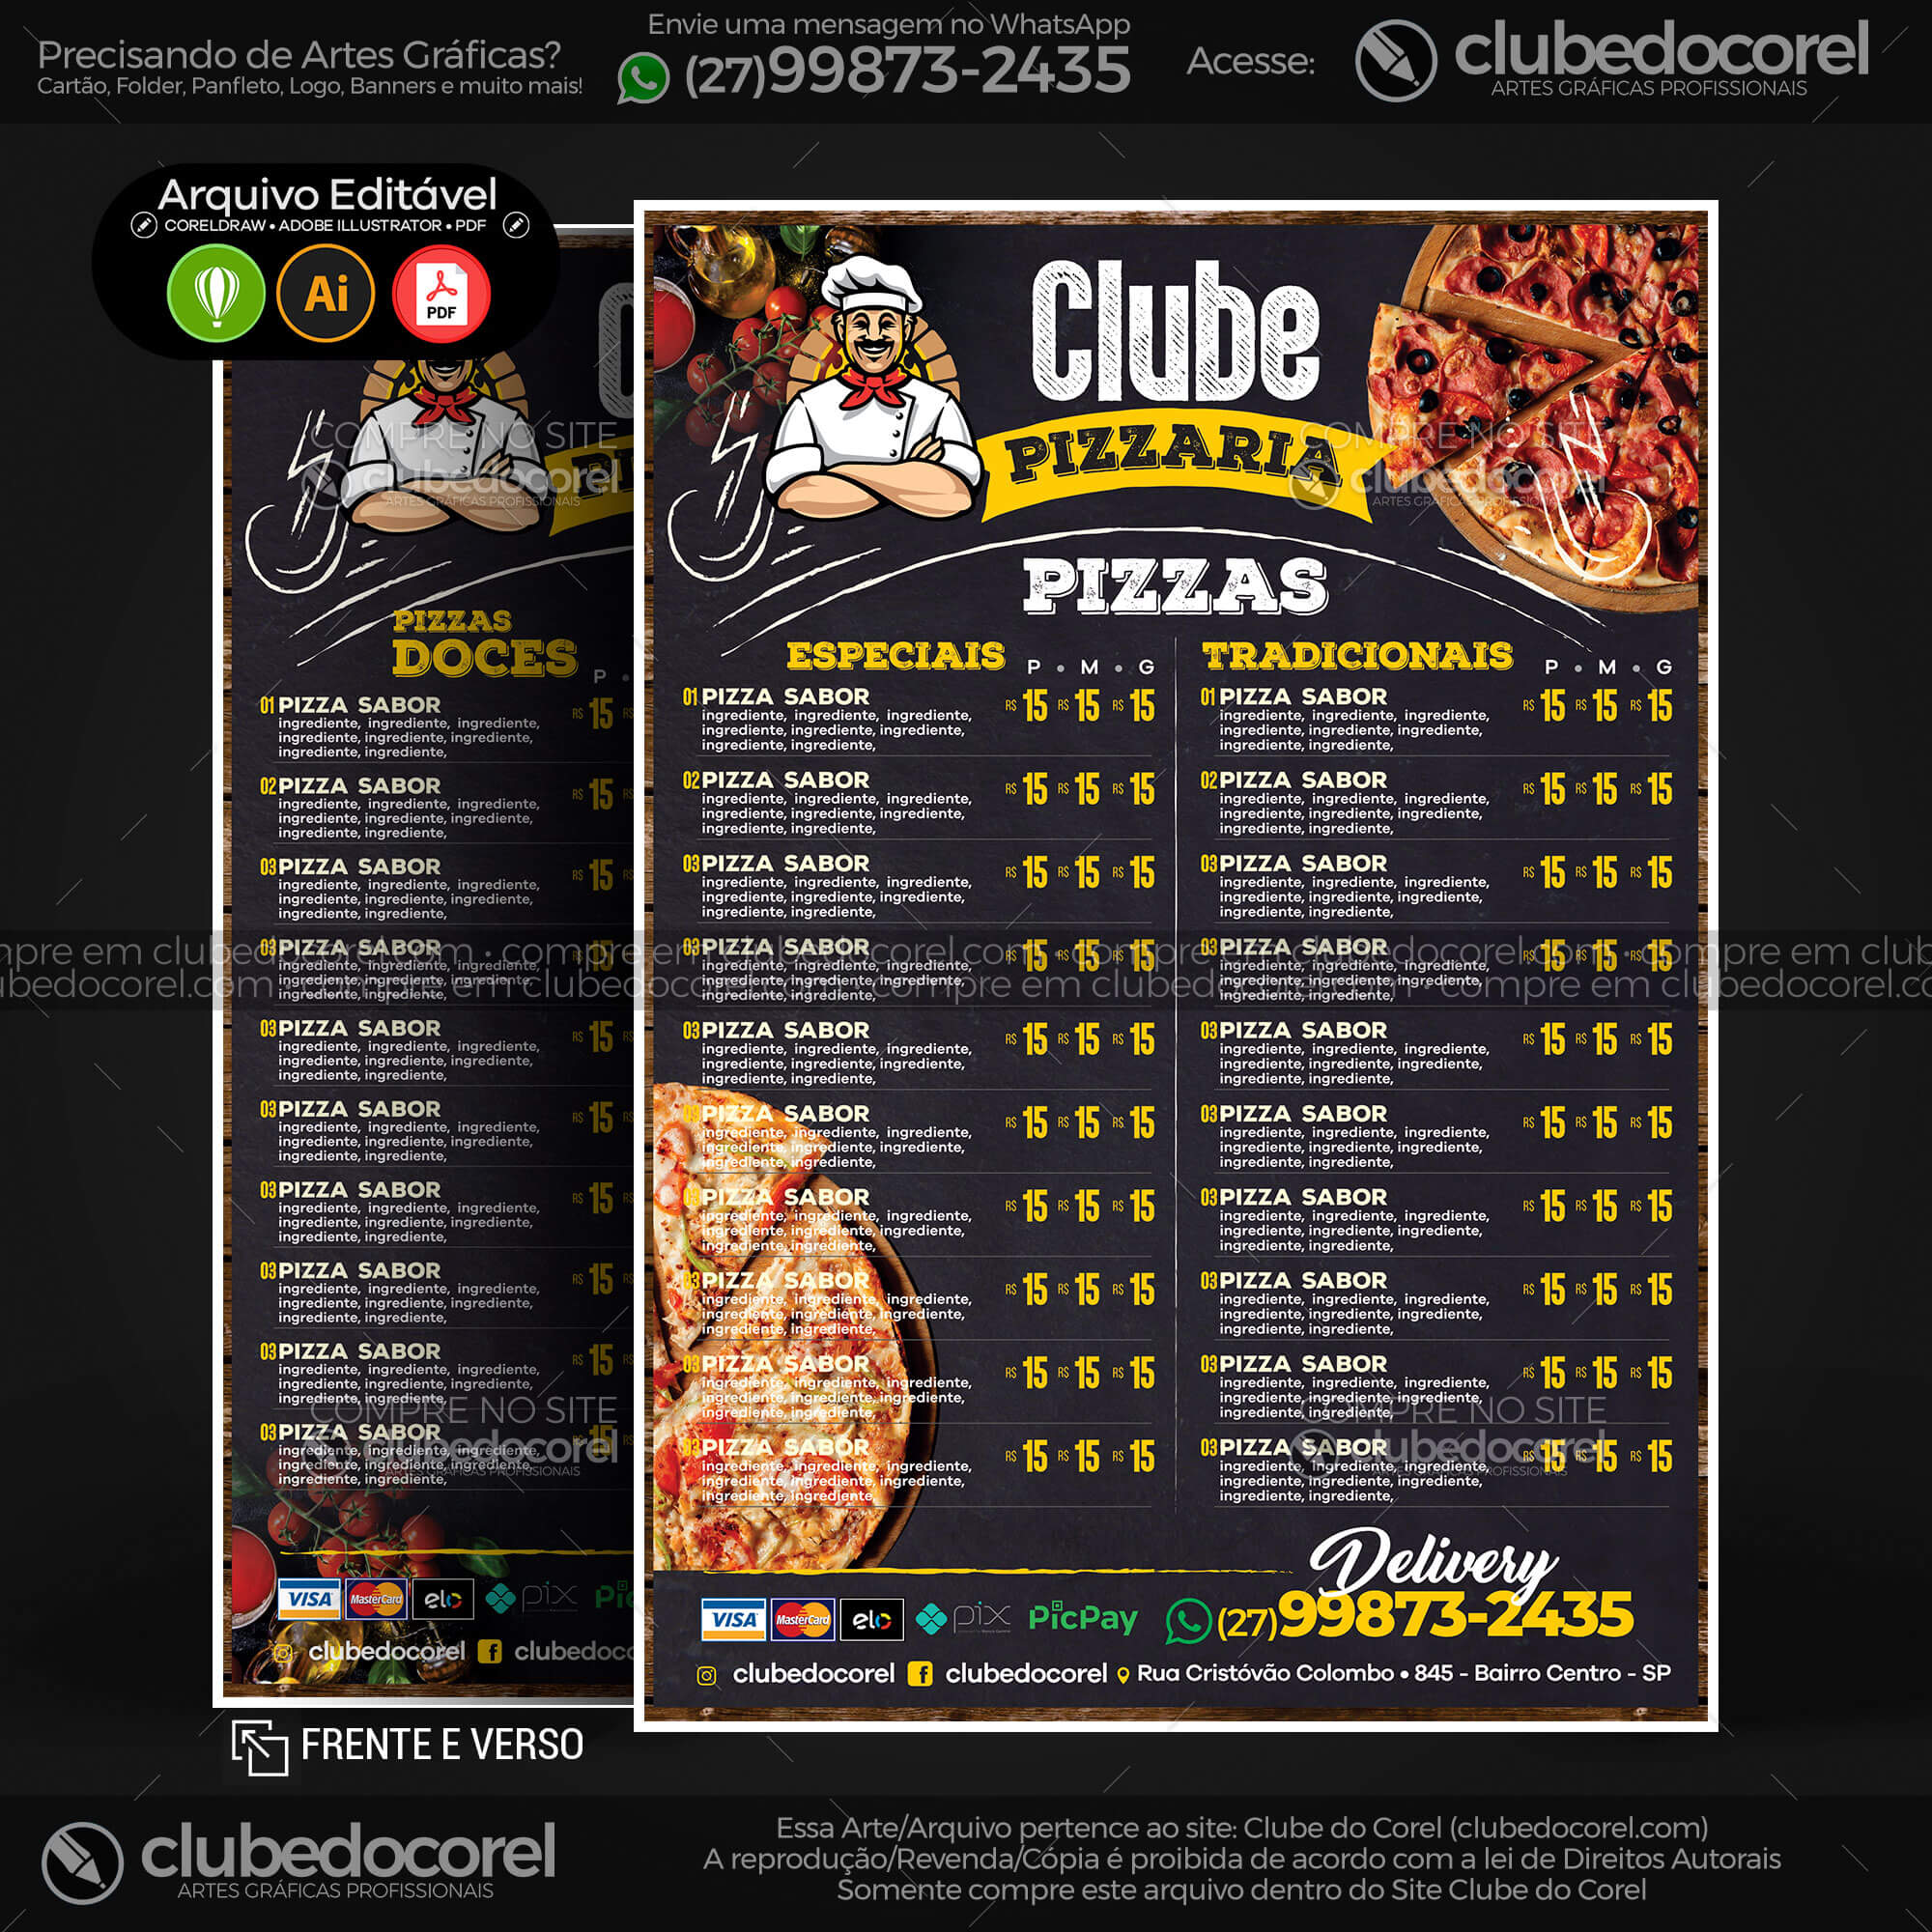 Cardápio Pizzaria - Pizza e Hamburguer (Lanche) - Modelo pronto Editável  #01 [CDR AI PDF] | Clube do Corel - cardapio pizza